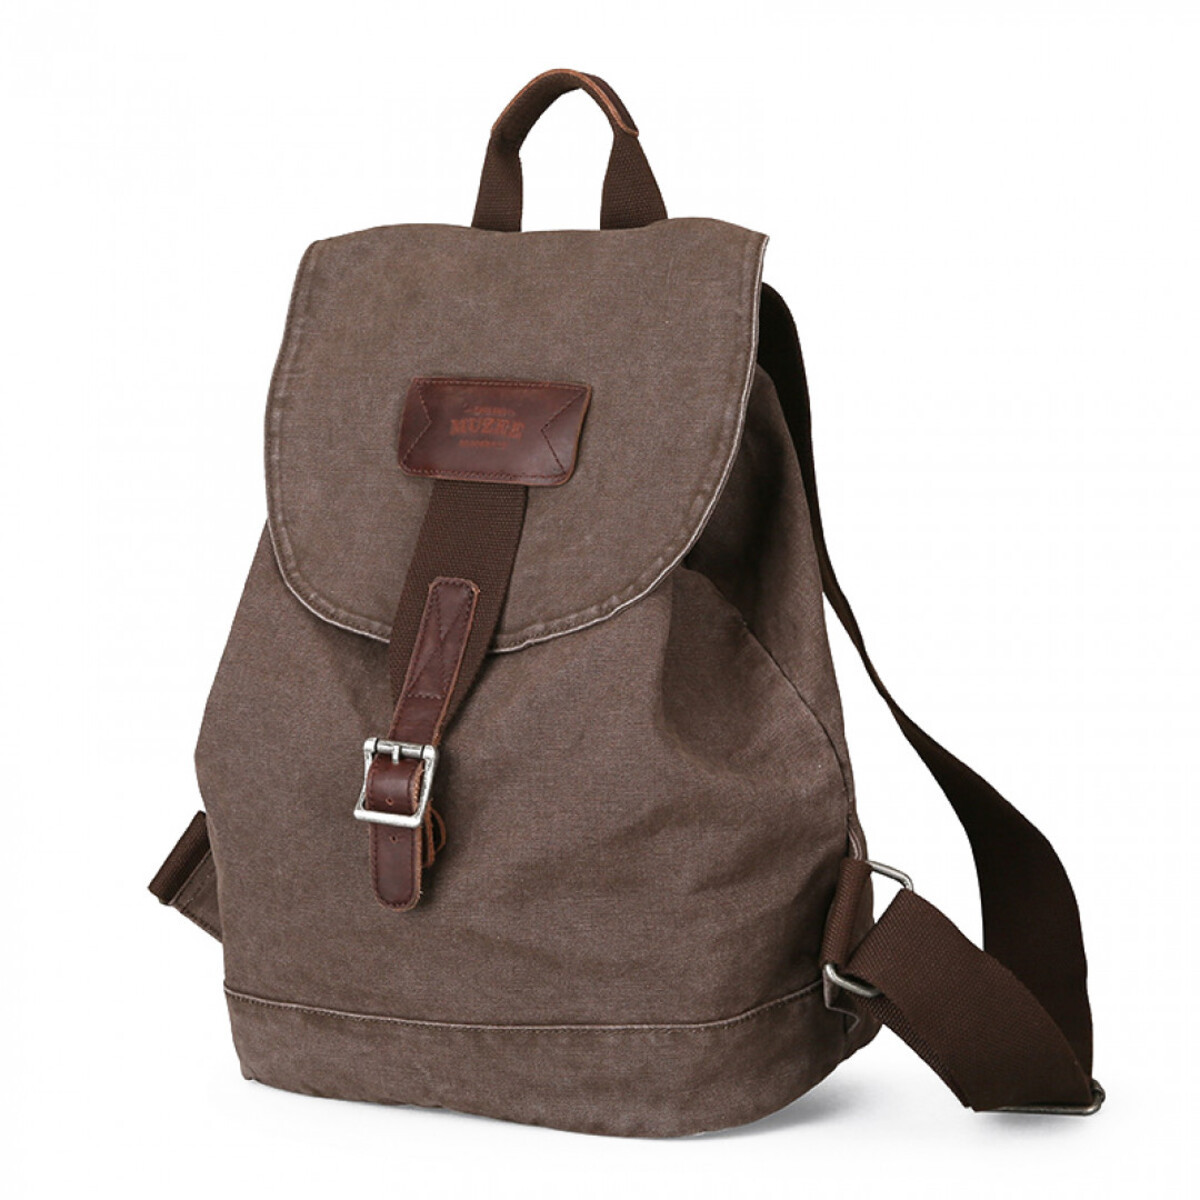 Вінтажний рюкзак MUZEE ME-1705 для ноутбука до 15,6" об'єм 25л. Коричневий